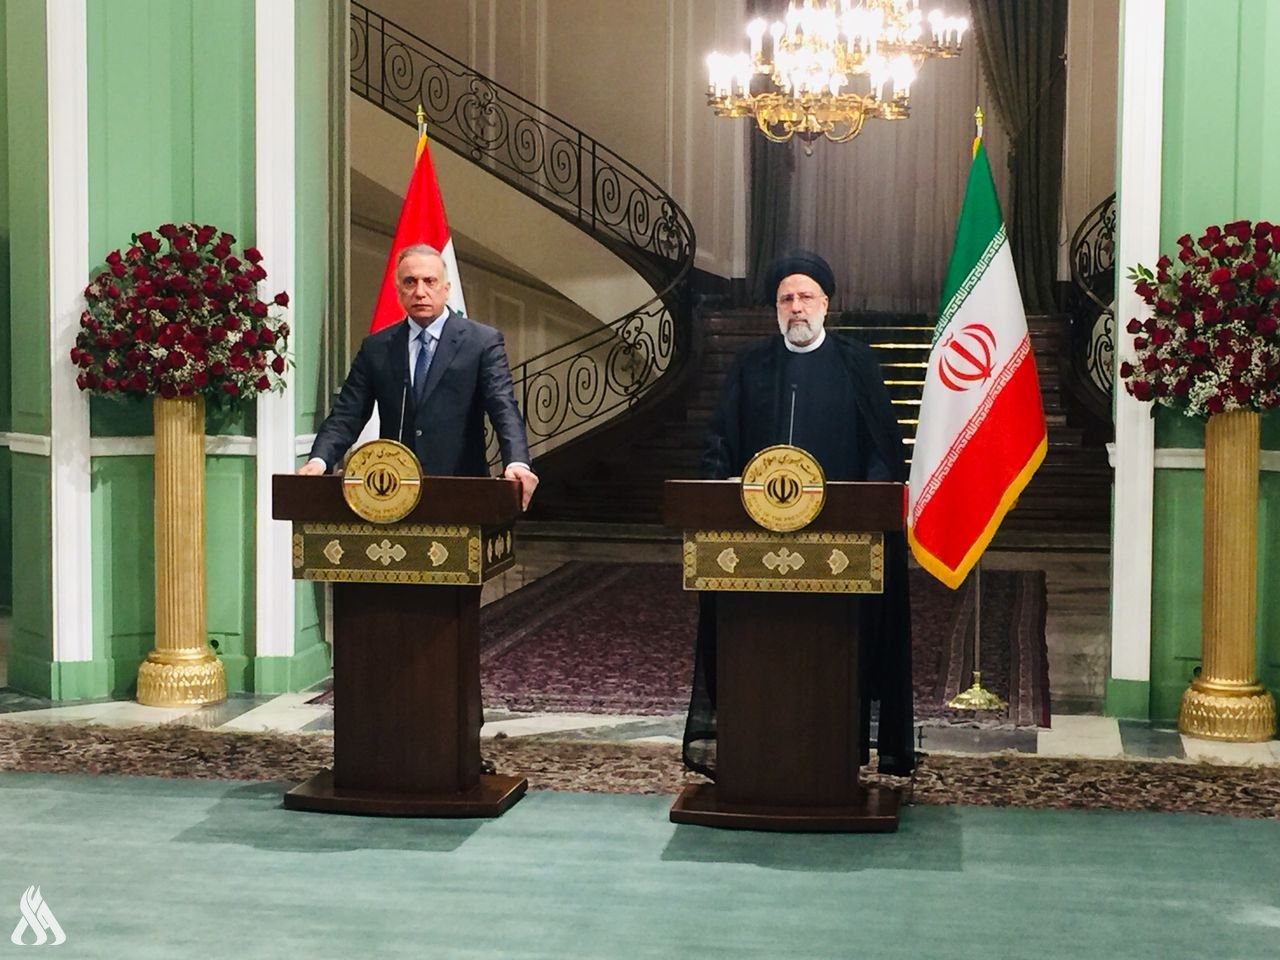 الرئيس الايراني ابراهيم رئيسي ورئيس الوزراء العراقي مصطفى الكاظمي (واع)